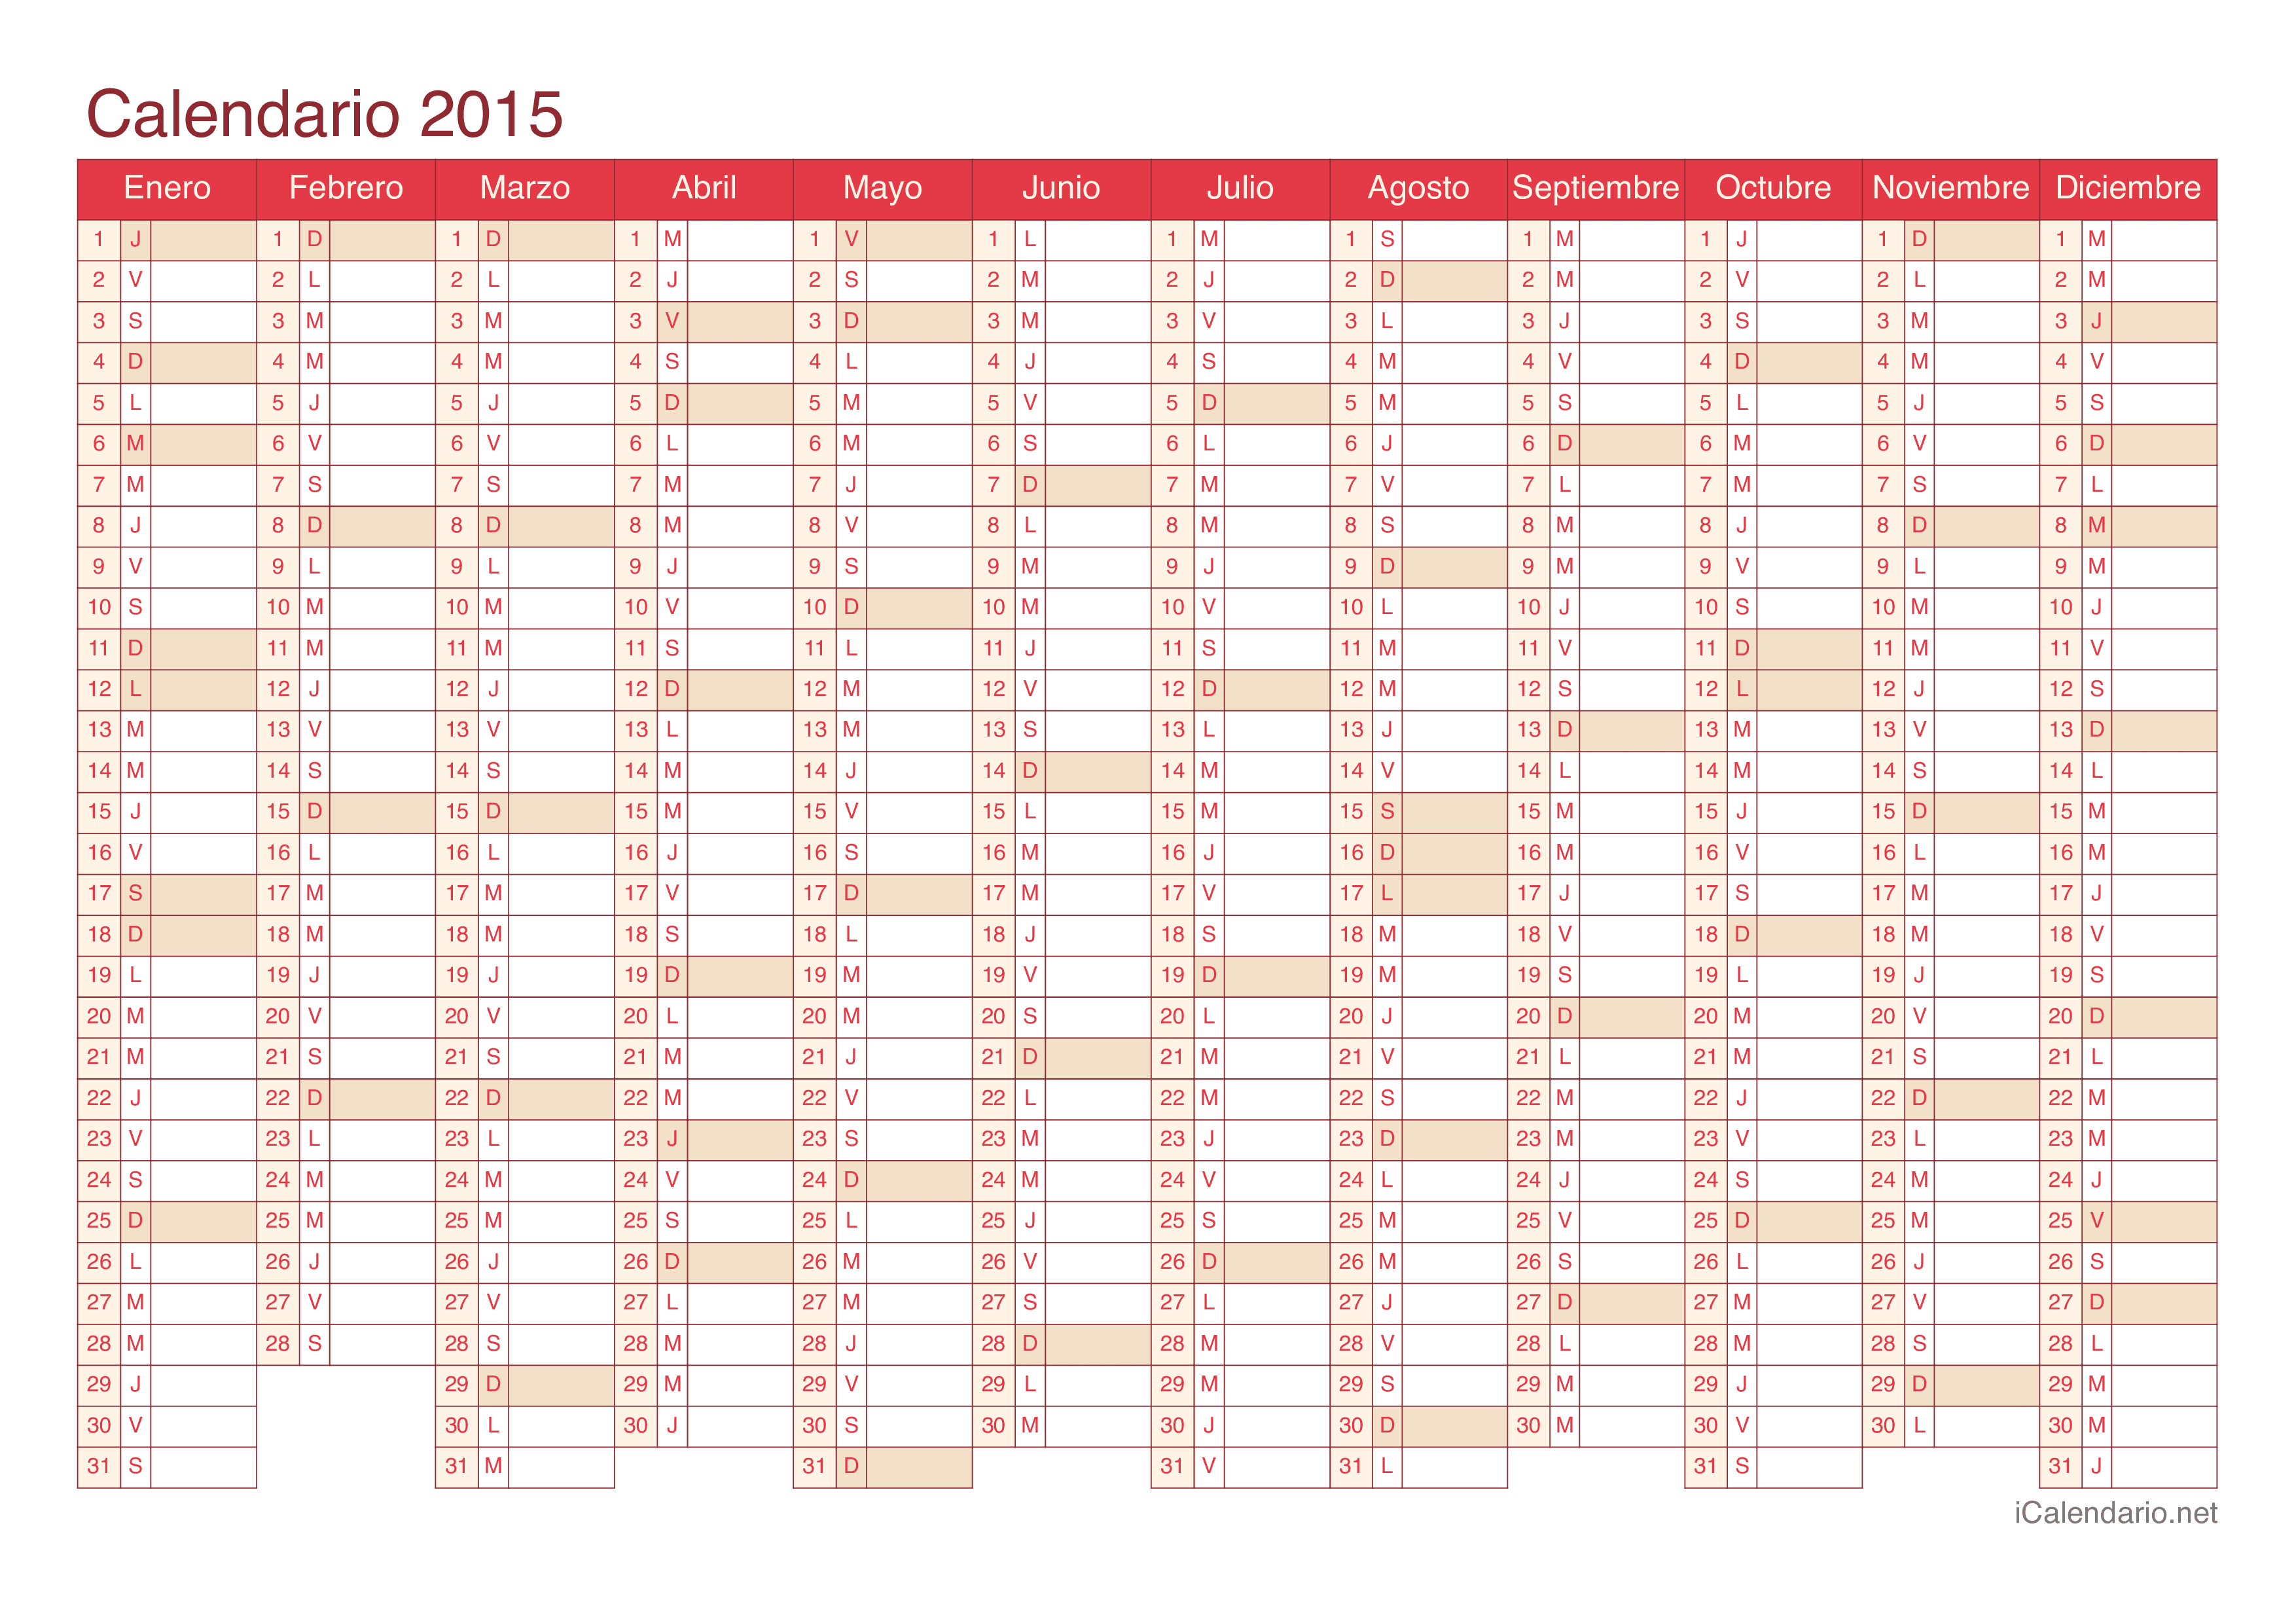 Calendario 2015 - Cherry